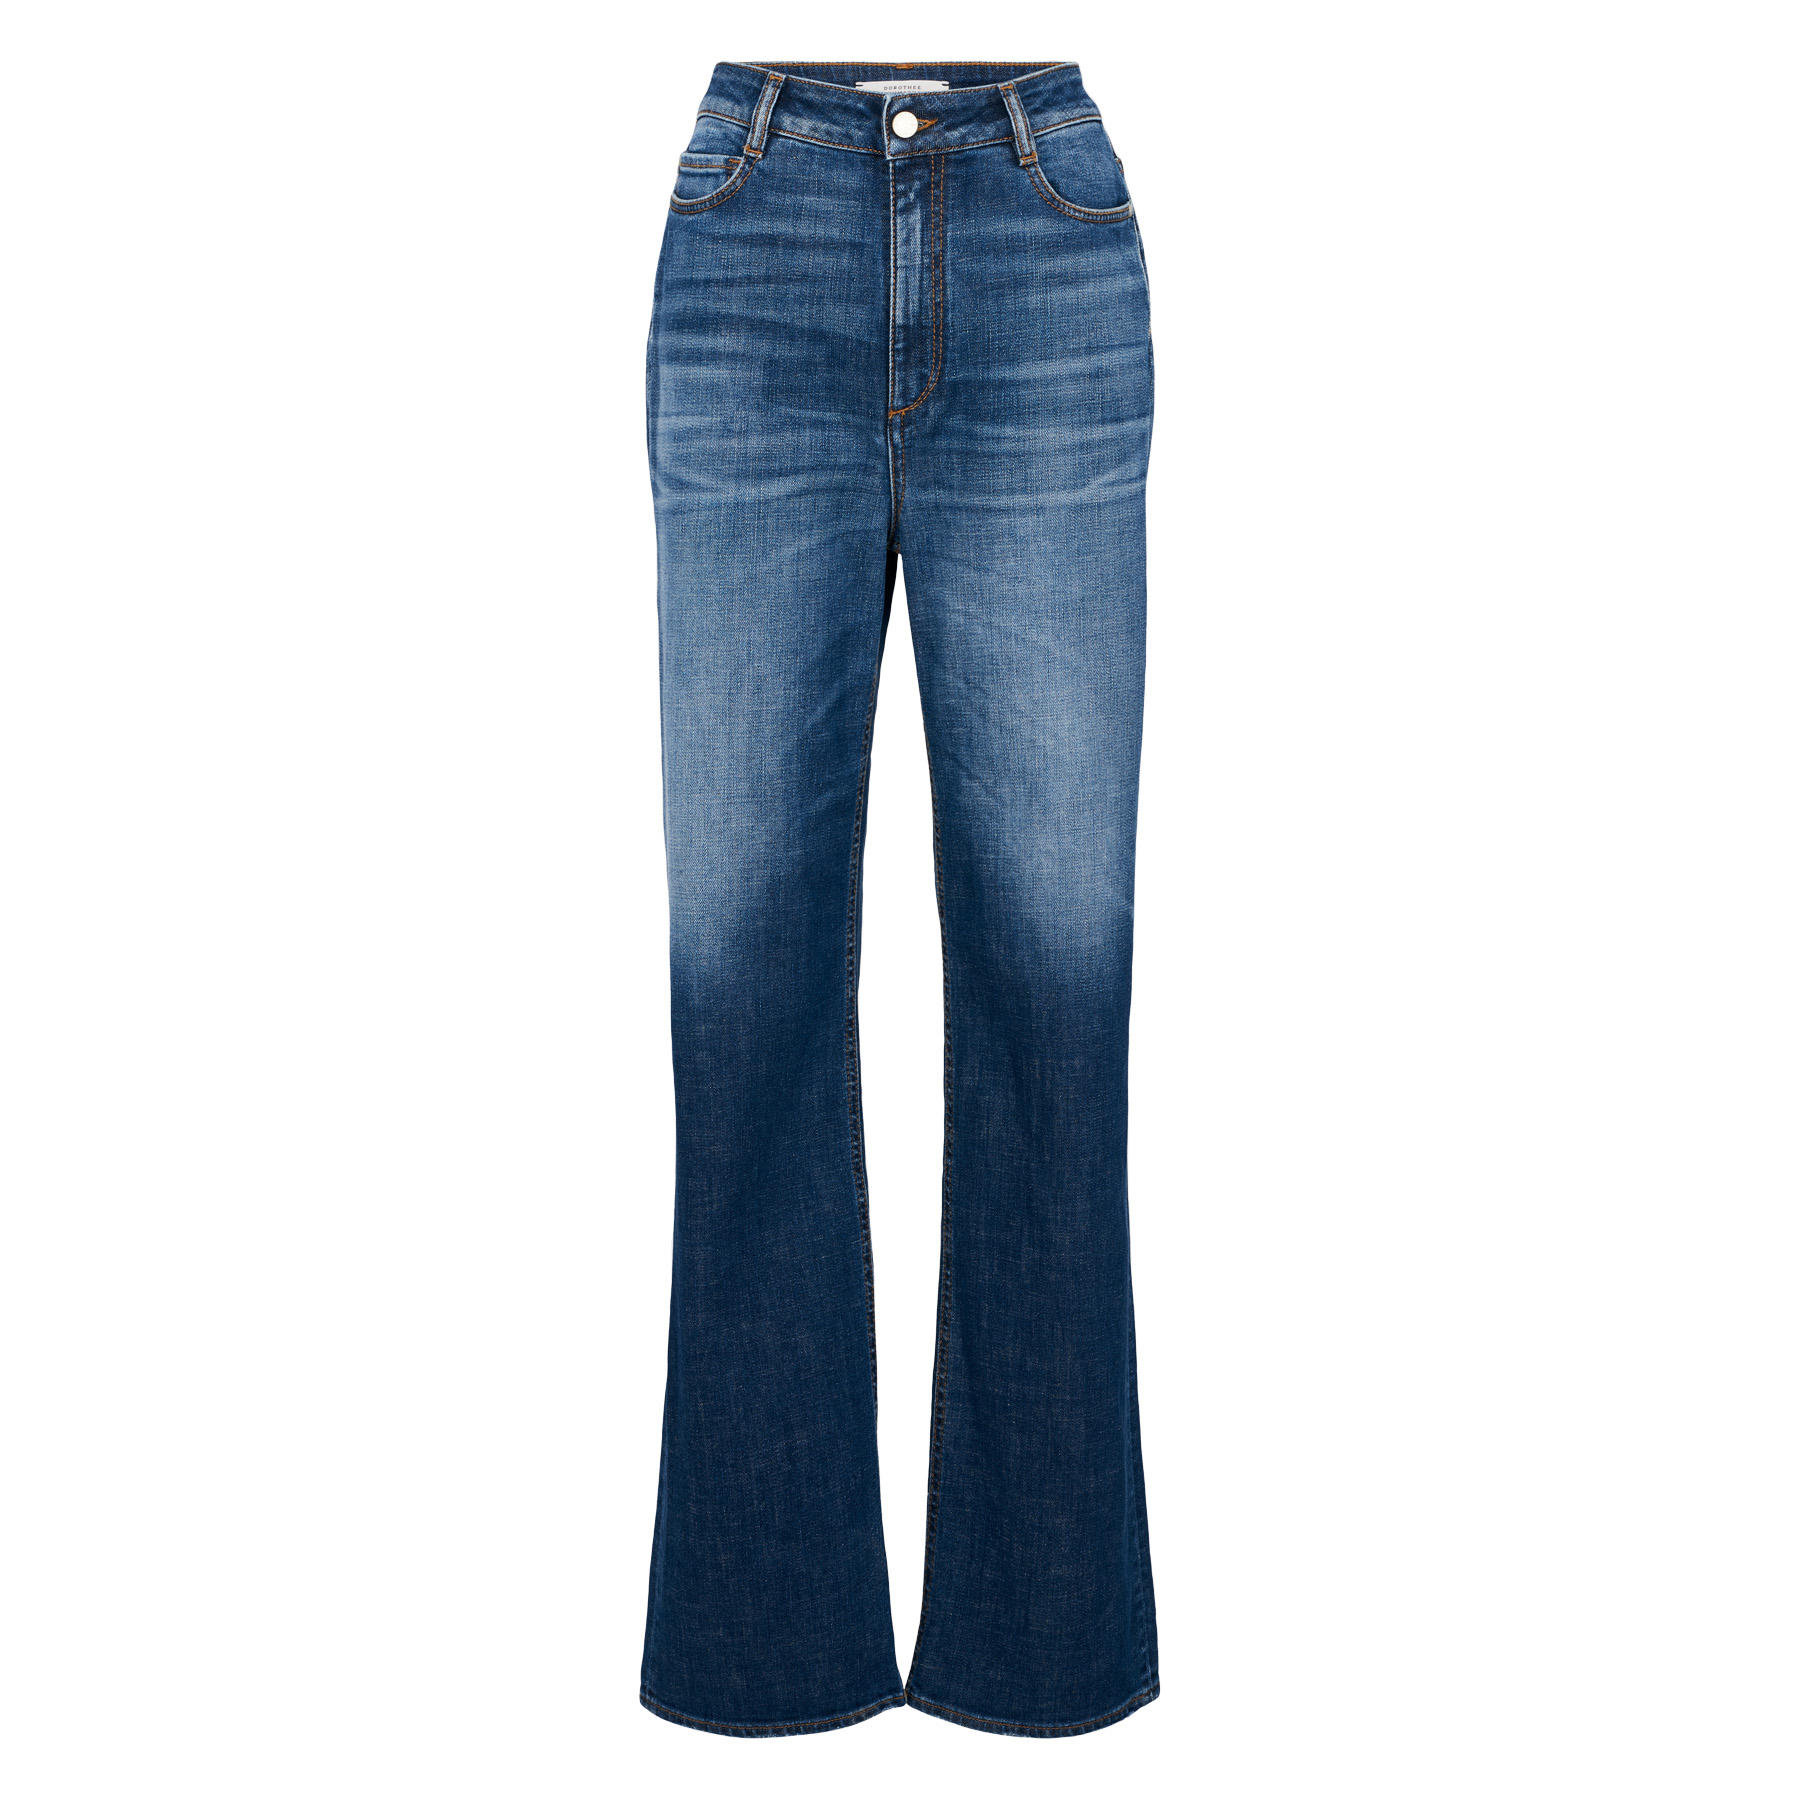 Damen Bekleidung Jeans Jeans mit gerader Passform Dorothee Schumacher Boyfriend Jeans Denim Love in Blau 